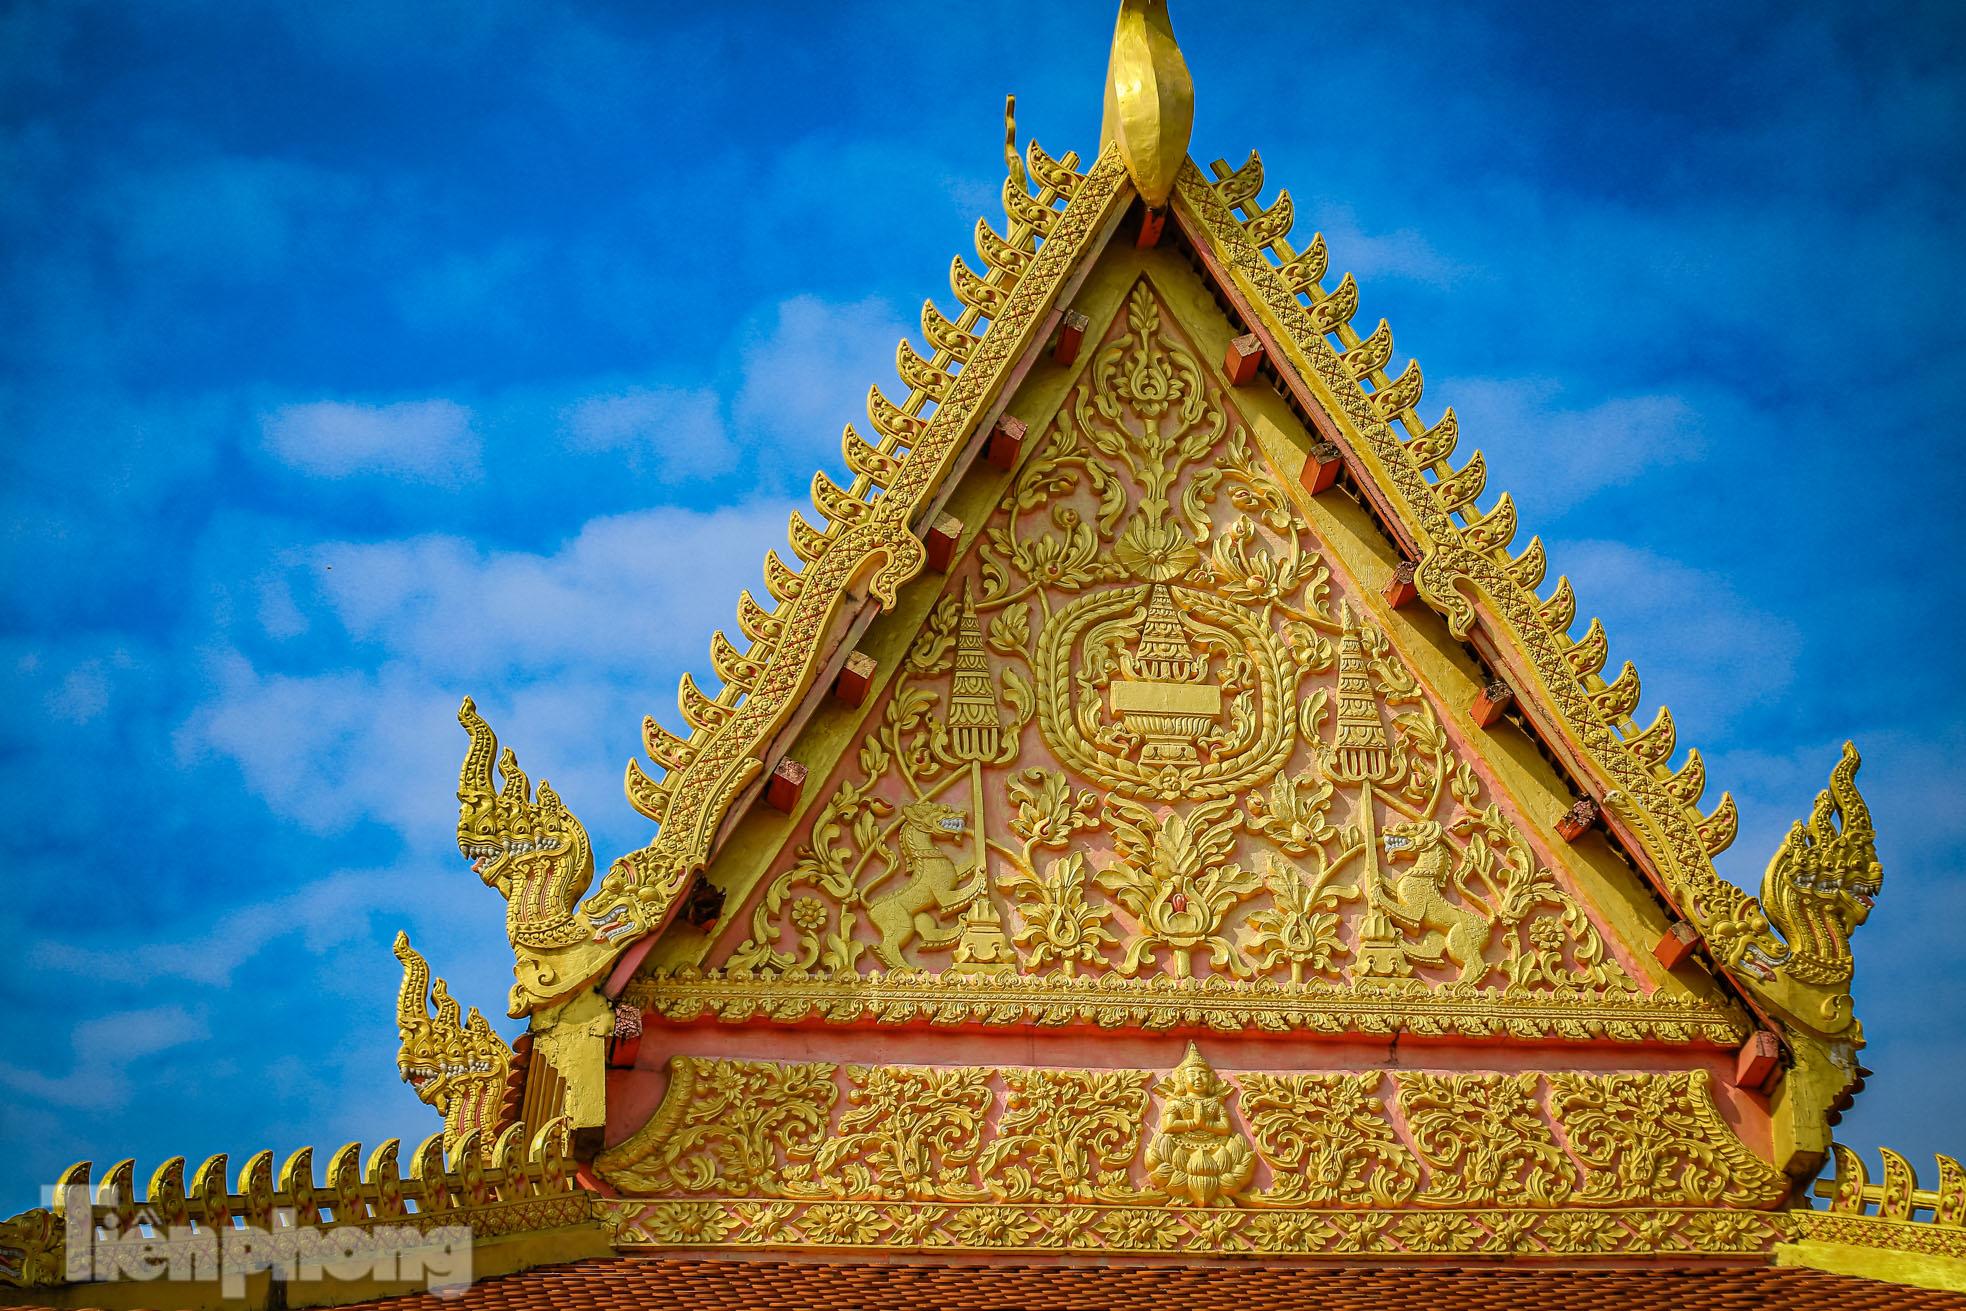 Khám phá vẻ đẹp kiến trúc của ngôi chùa Khmer tại Hà Nội - Ảnh 12.